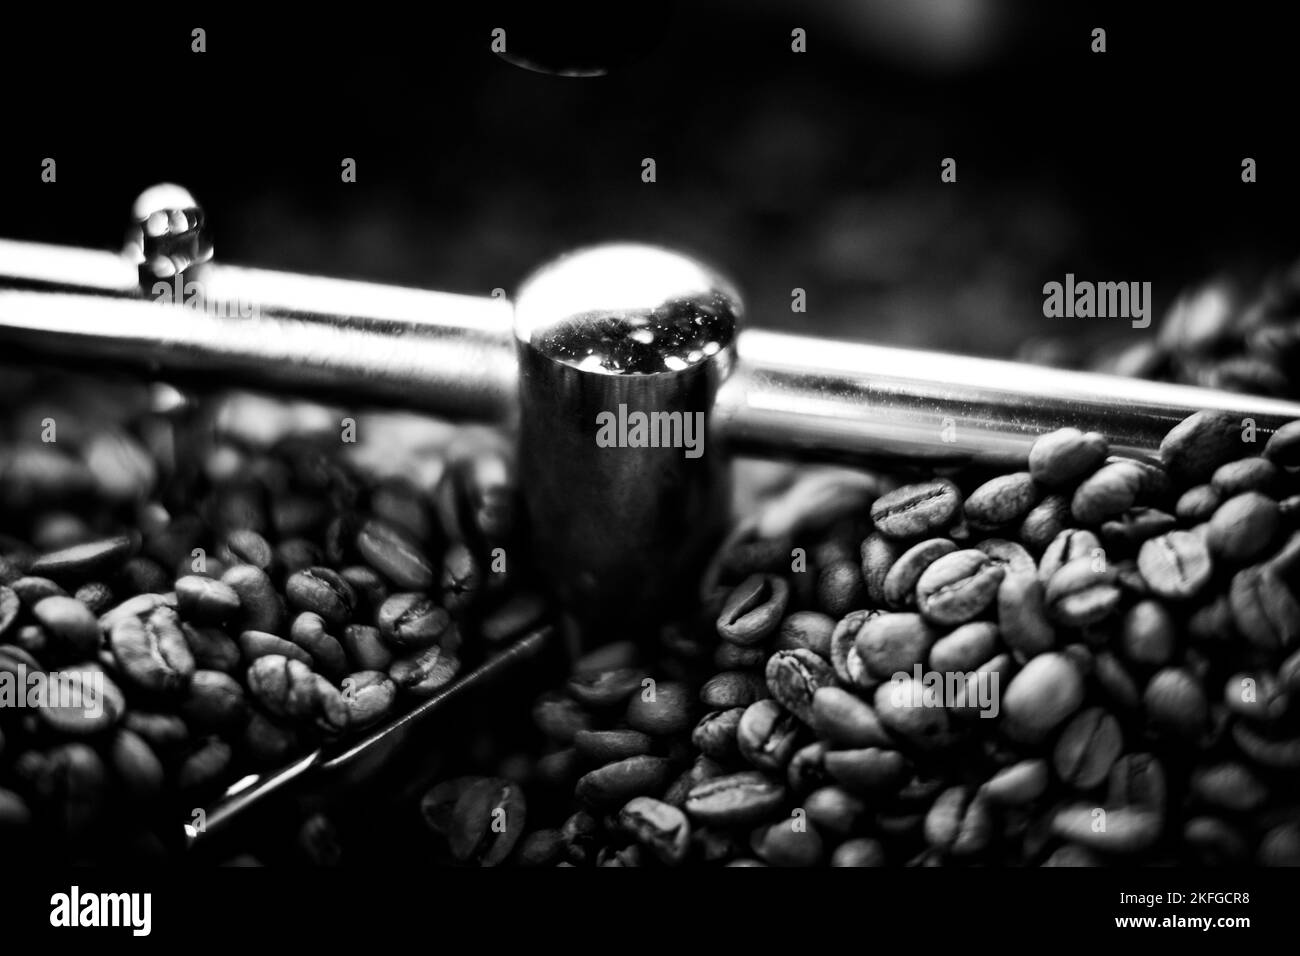 Kaffeebohnen in einer Kaffeemaschine, in dunklen Farben. Stockfoto